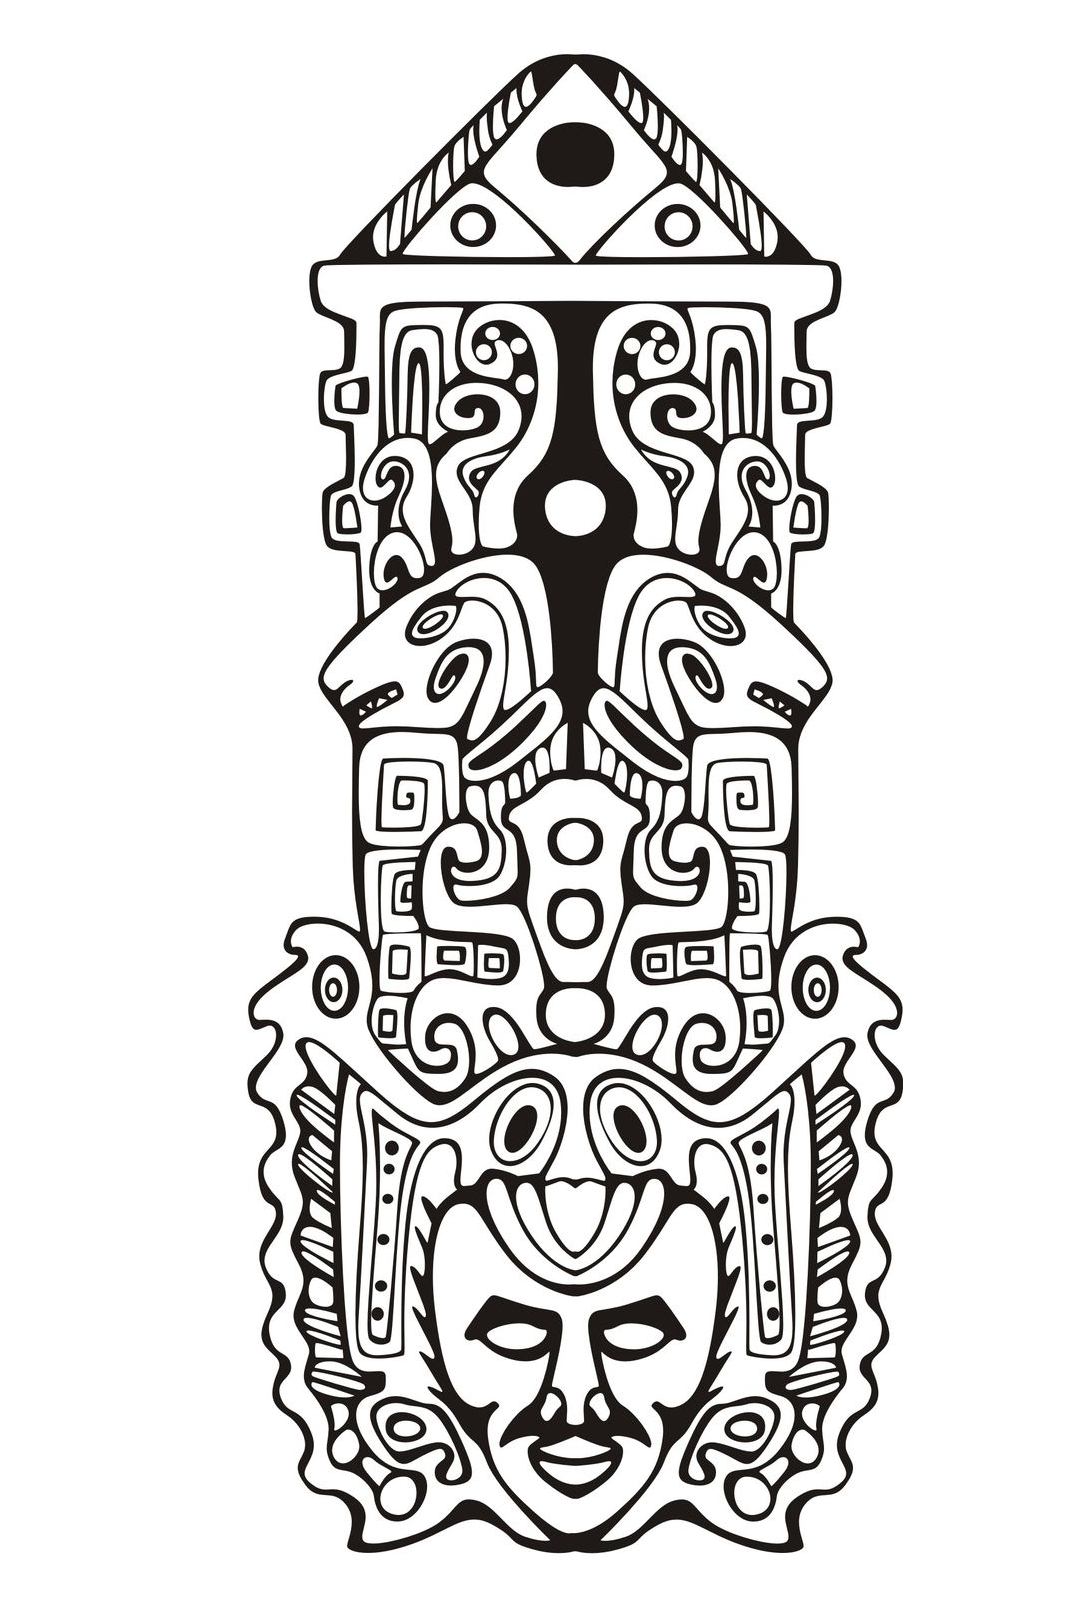 Desenhos simples para colorir de Maias, astecas e incas, Artista : Rocich   Fonte : 123rf